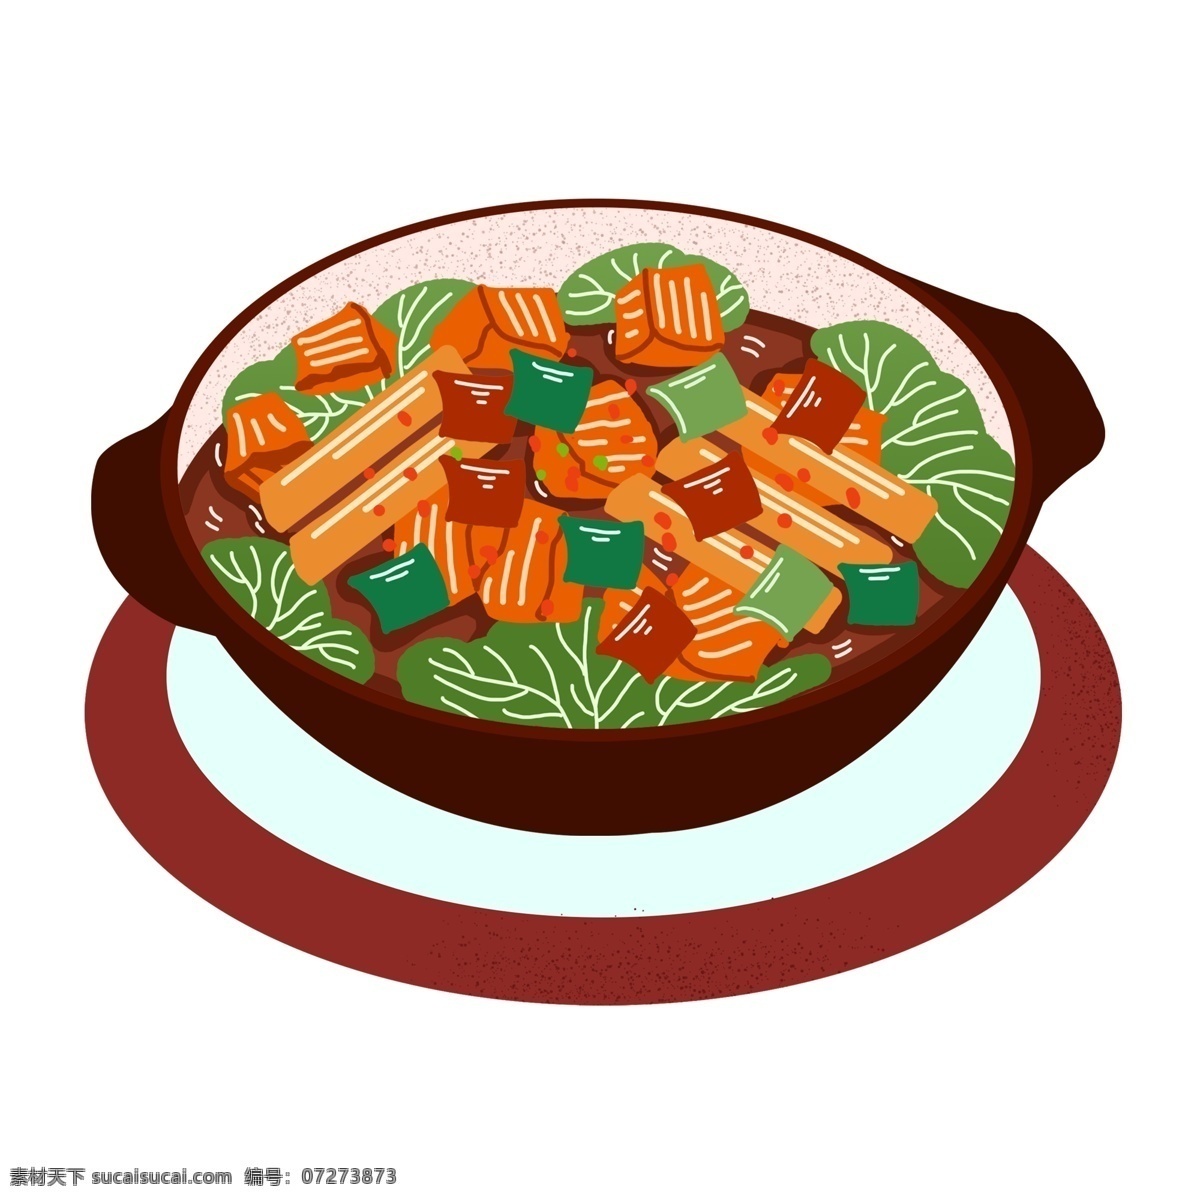 卡通 手绘 碗 美食 食物 盘子 插画